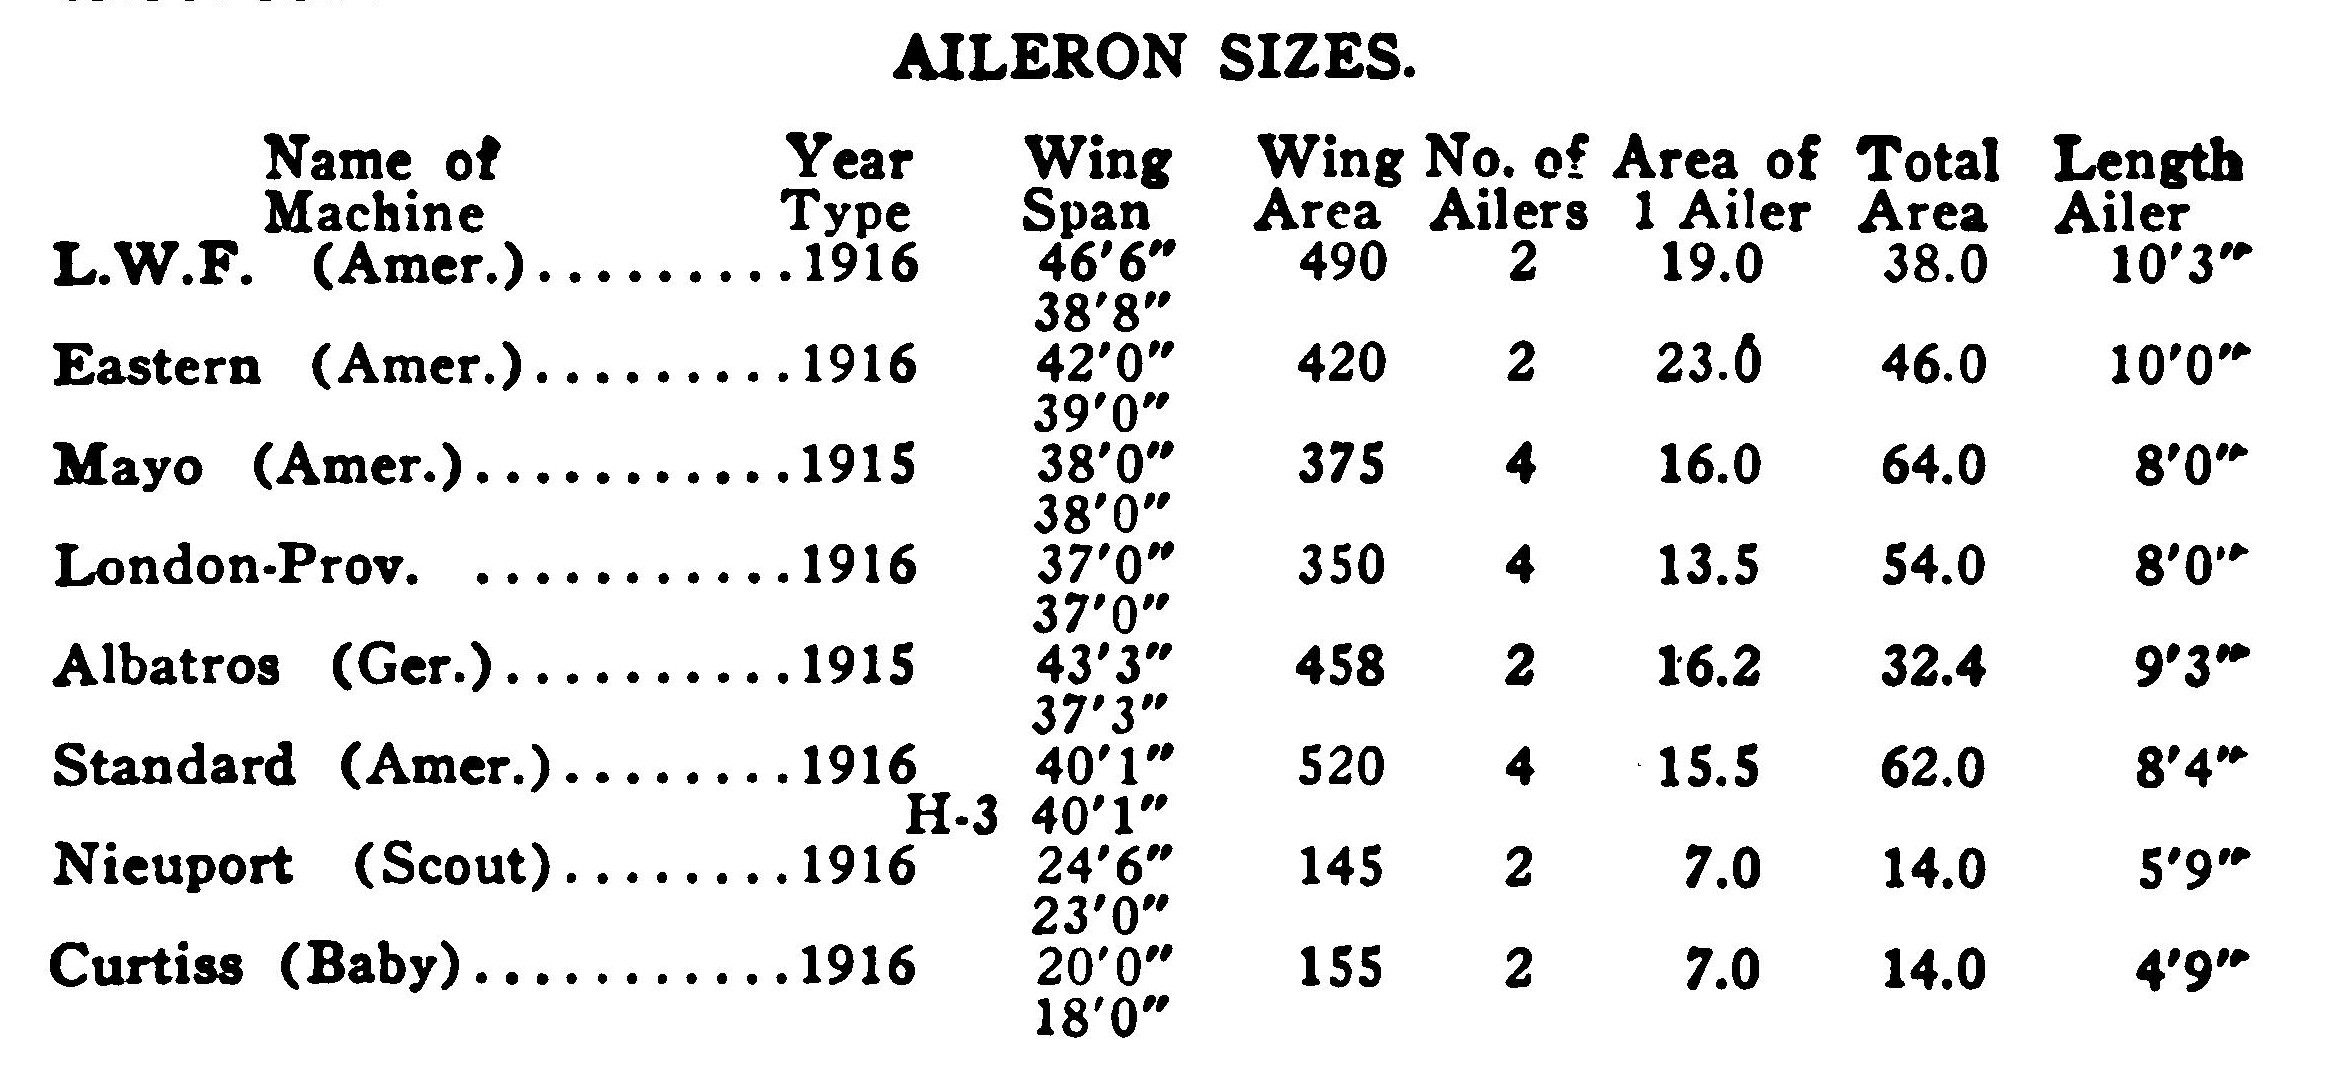 Aileron Sizes Table